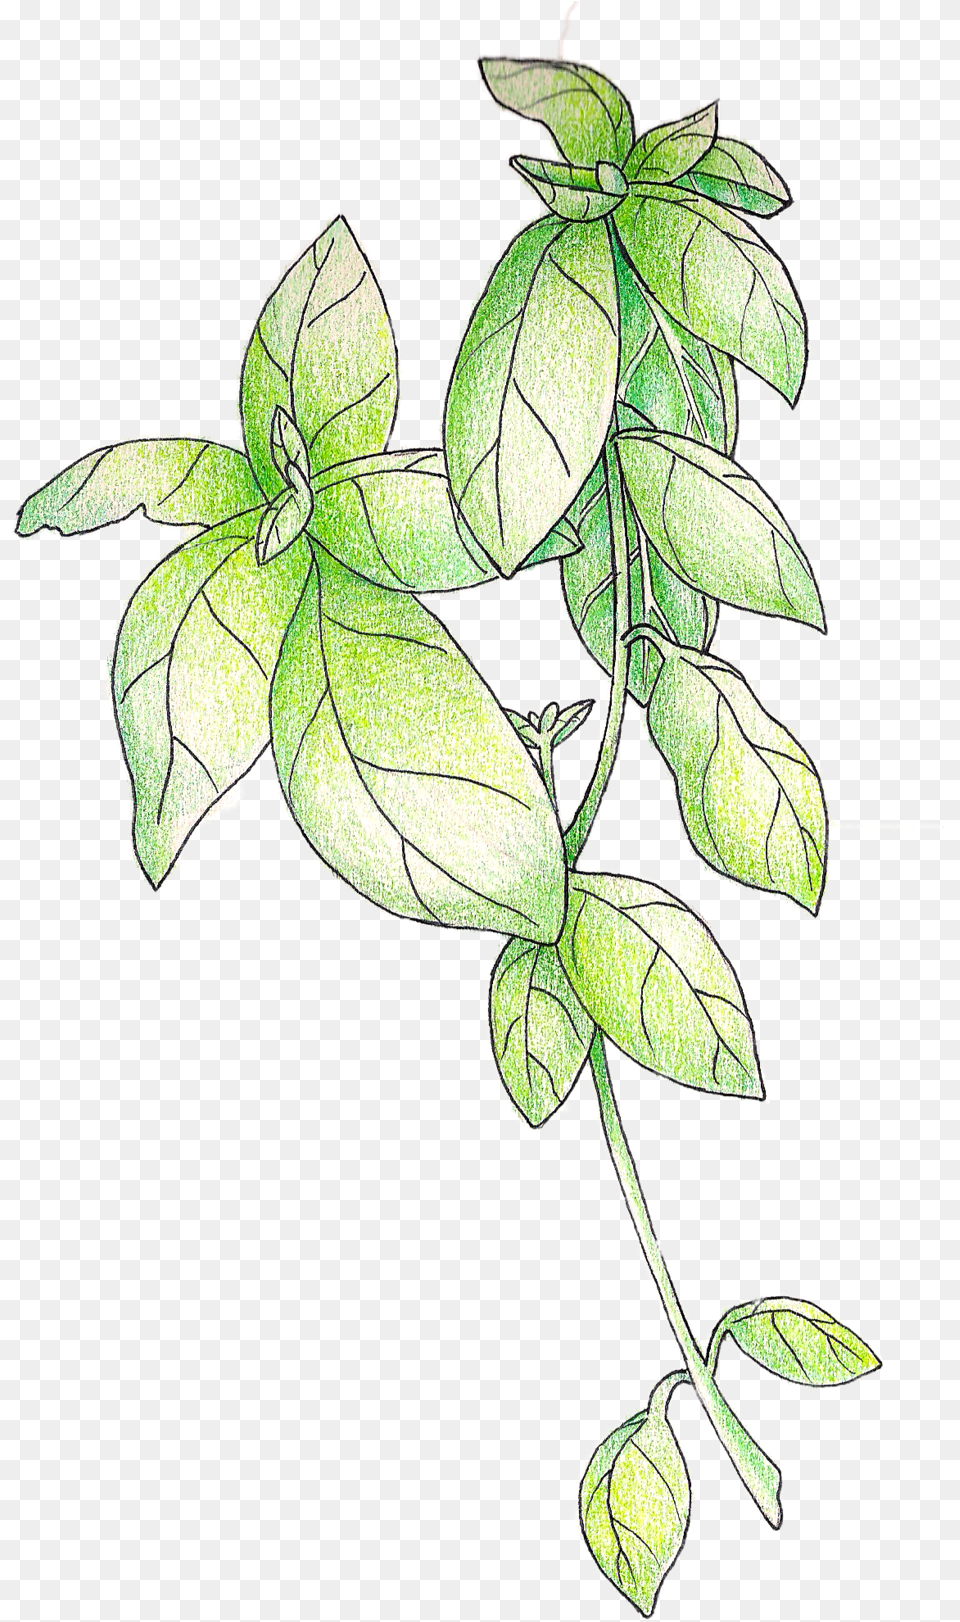 Illustration U2014 Christi Difrank Line Art, Leaf, Plant, Vine, Drawing Png Image